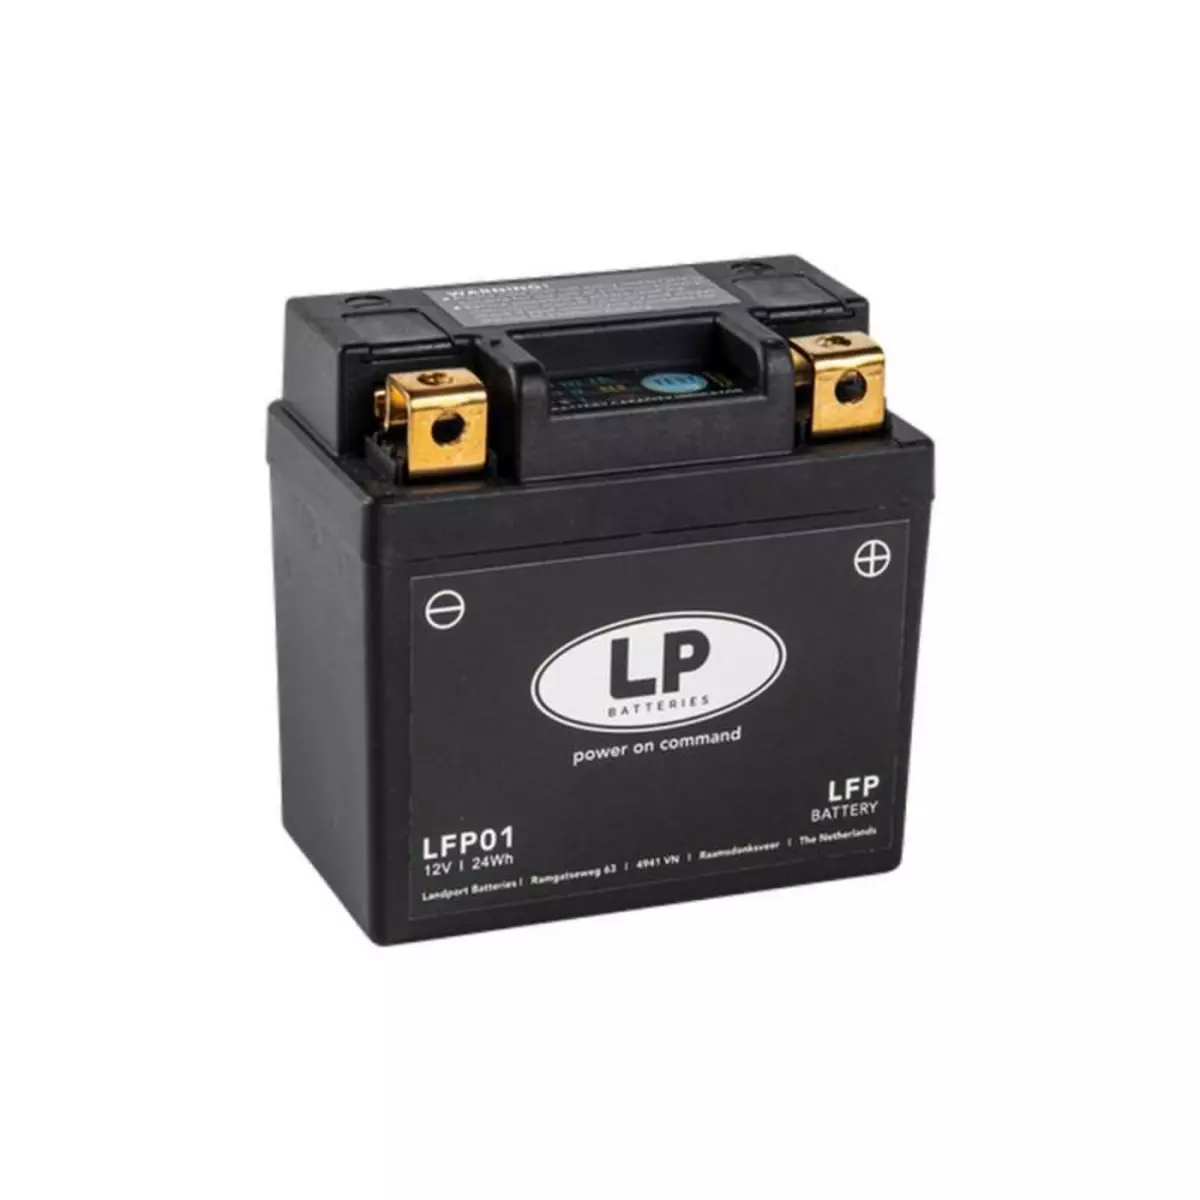  Batterie moto Landport Lithium LFP01 12.8v 2AH 120A pour KTM Husqvarna